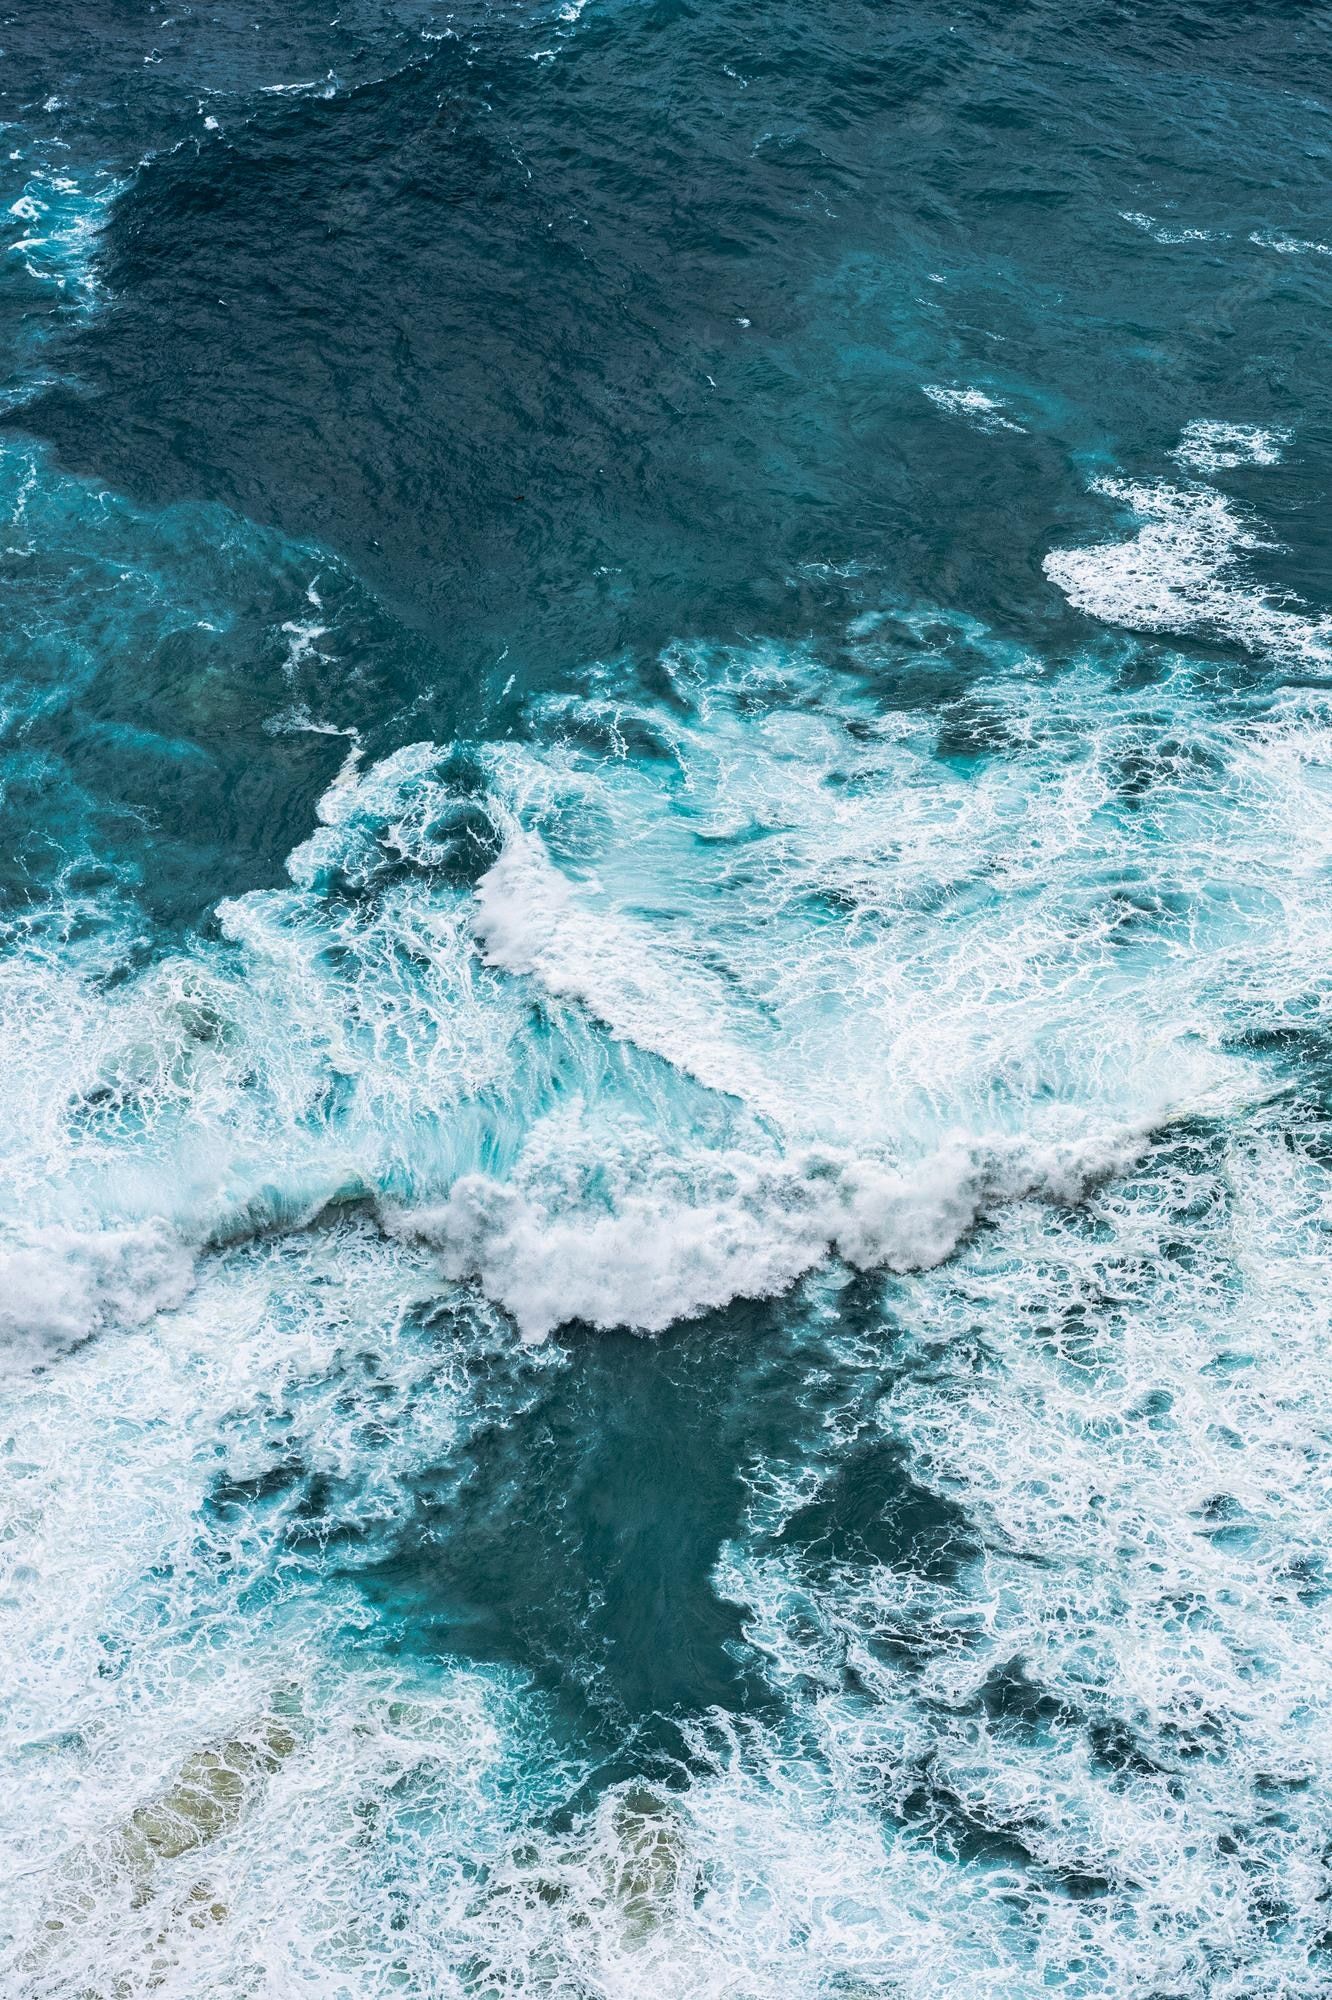 Aerial view of the waves in the ocean - Ocean